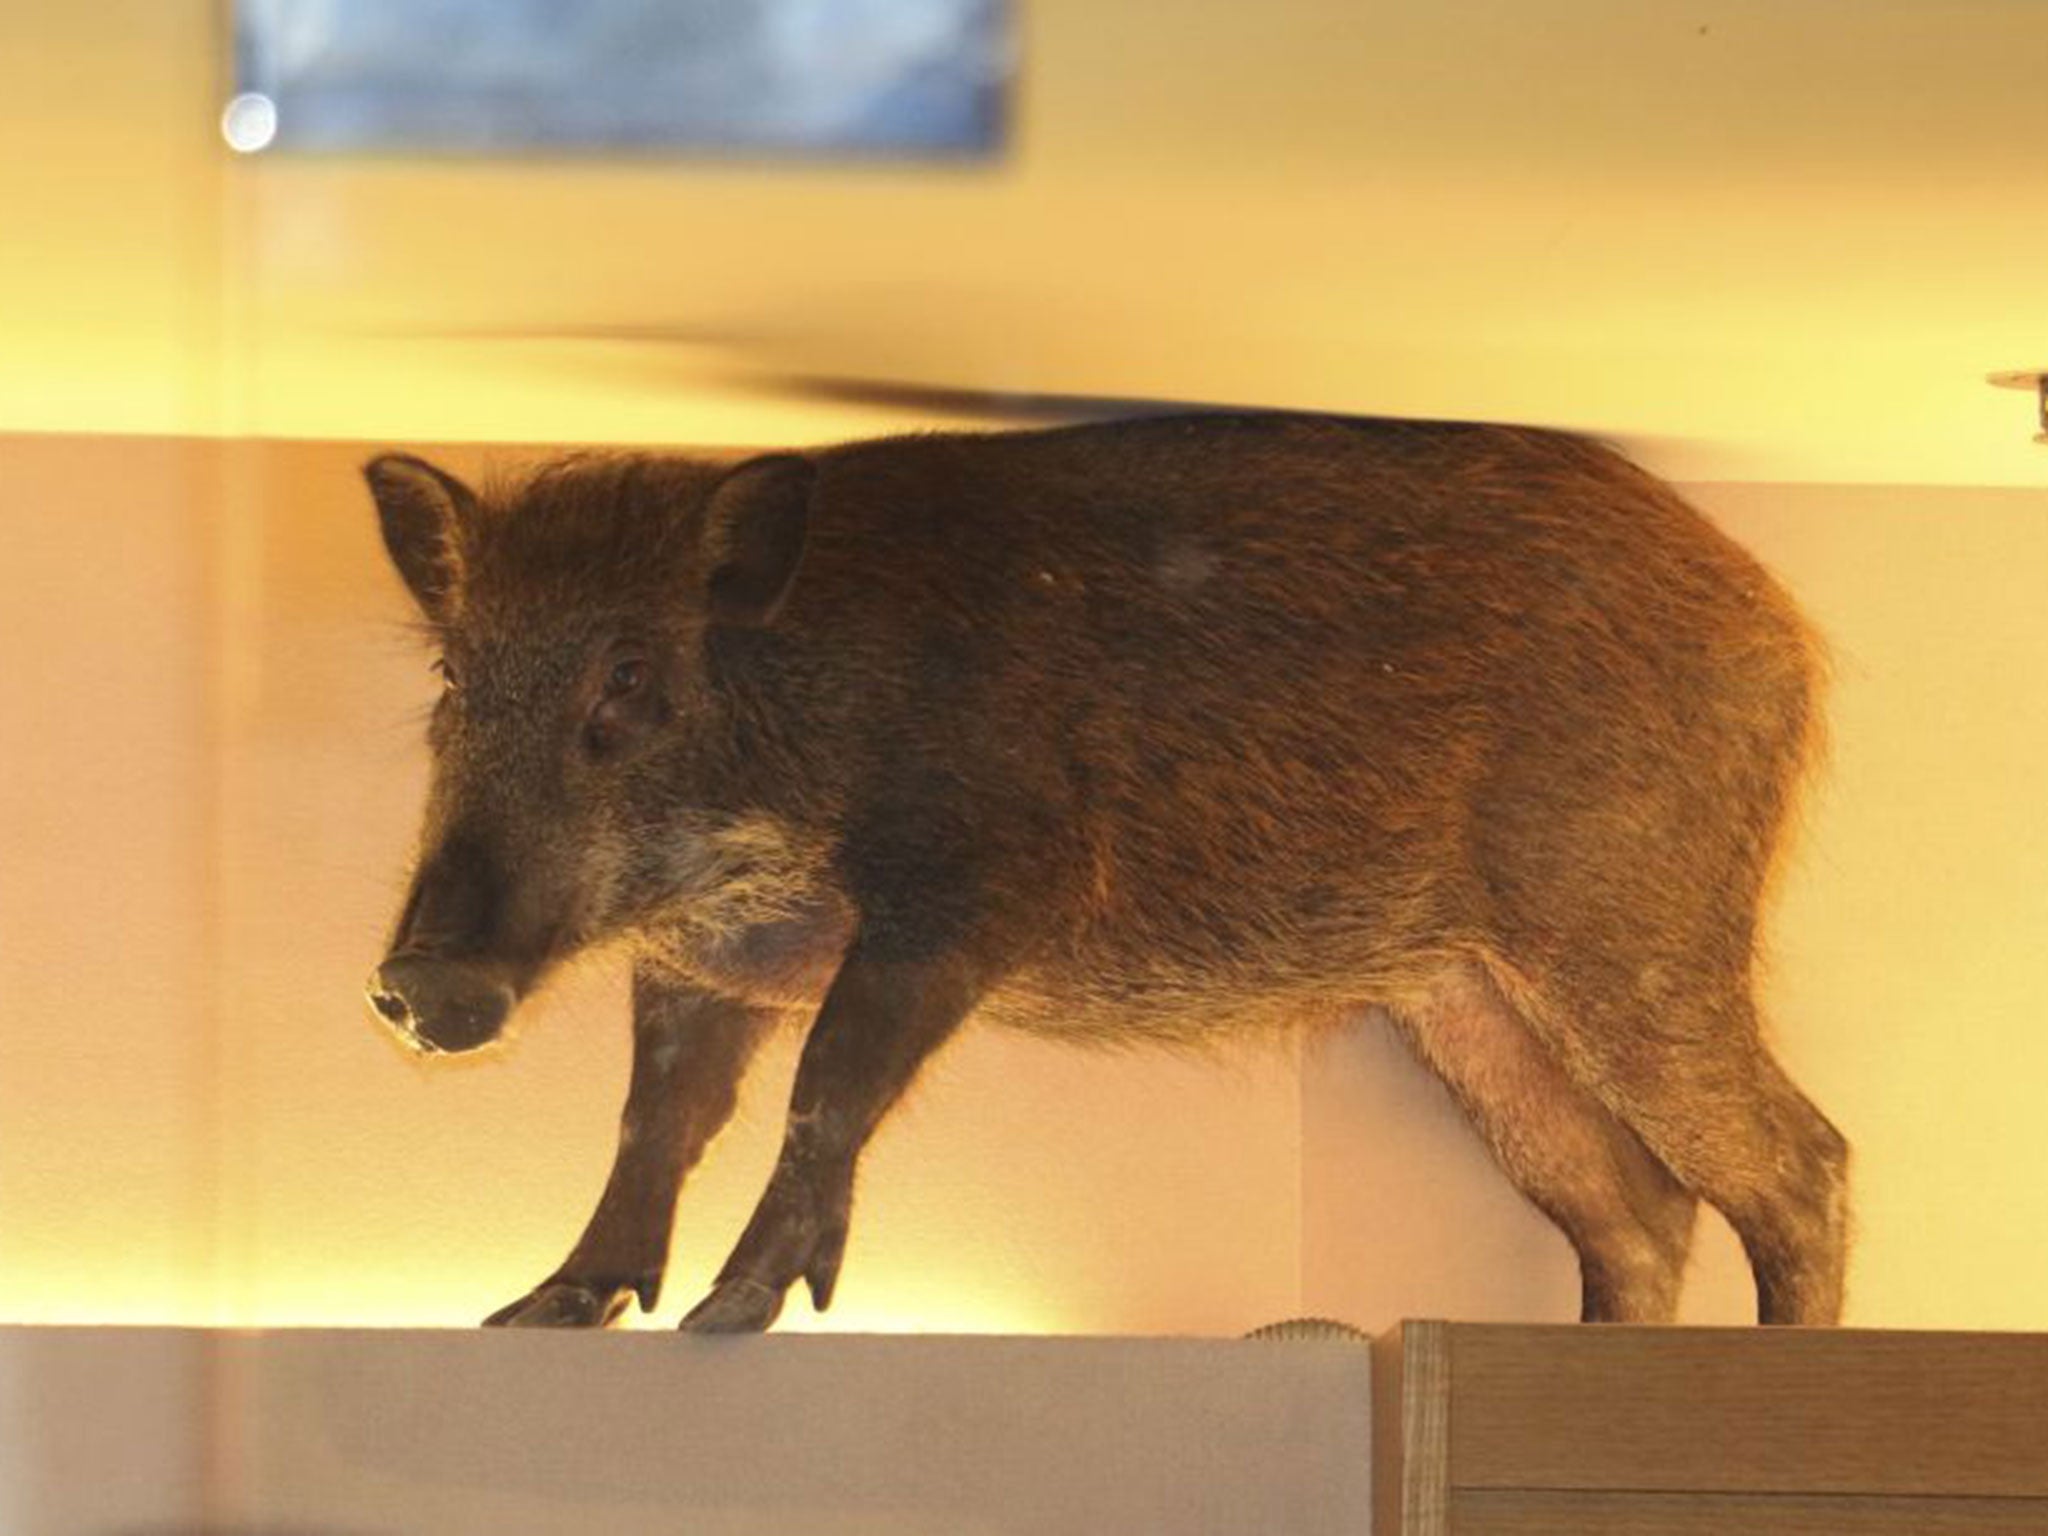 Wild boar in Hong Kong shopping mall